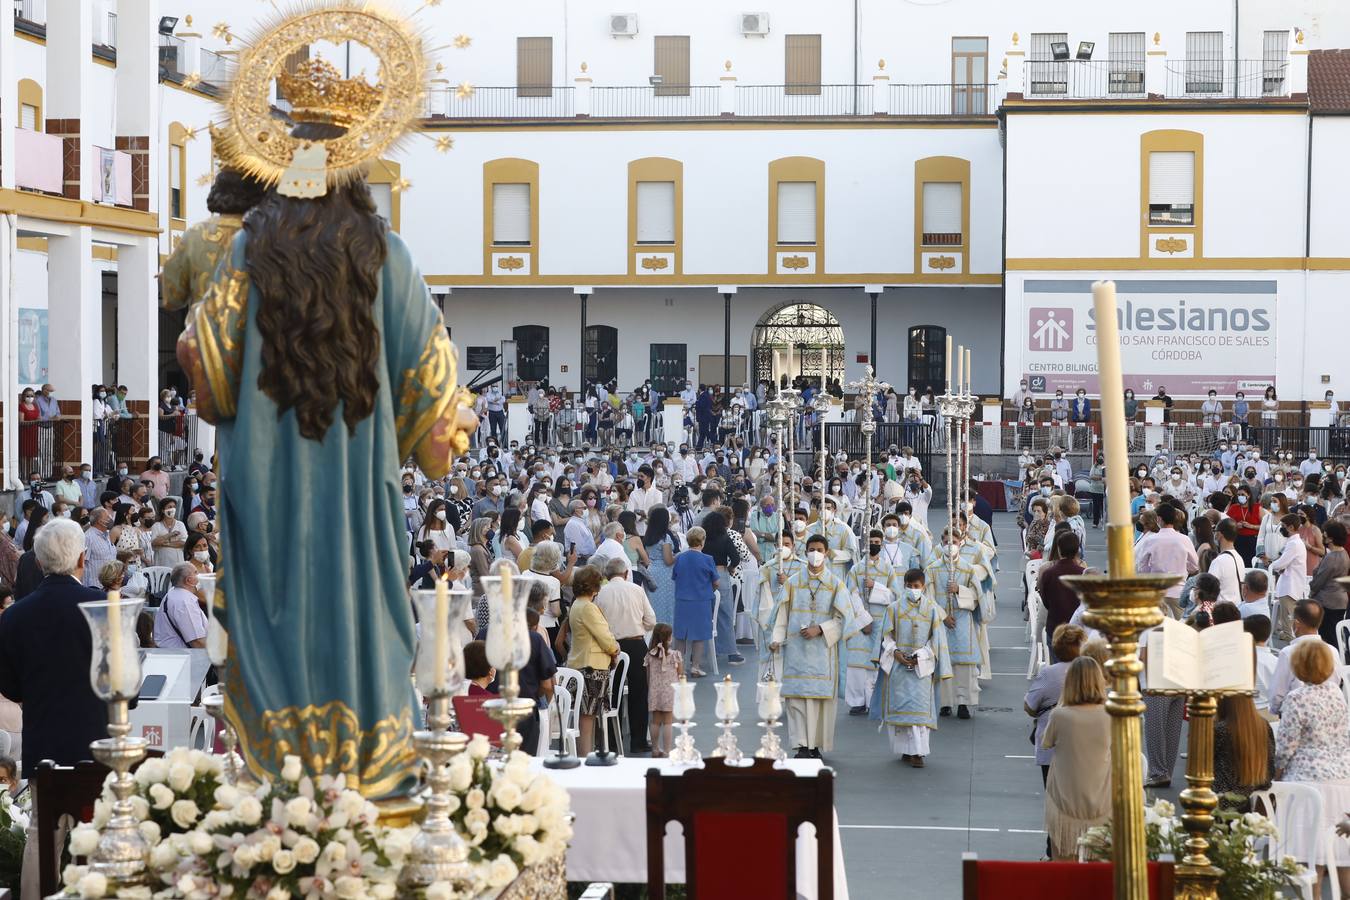 La celebración en honor a María Auxiliadora en Córdoba, en imágenes